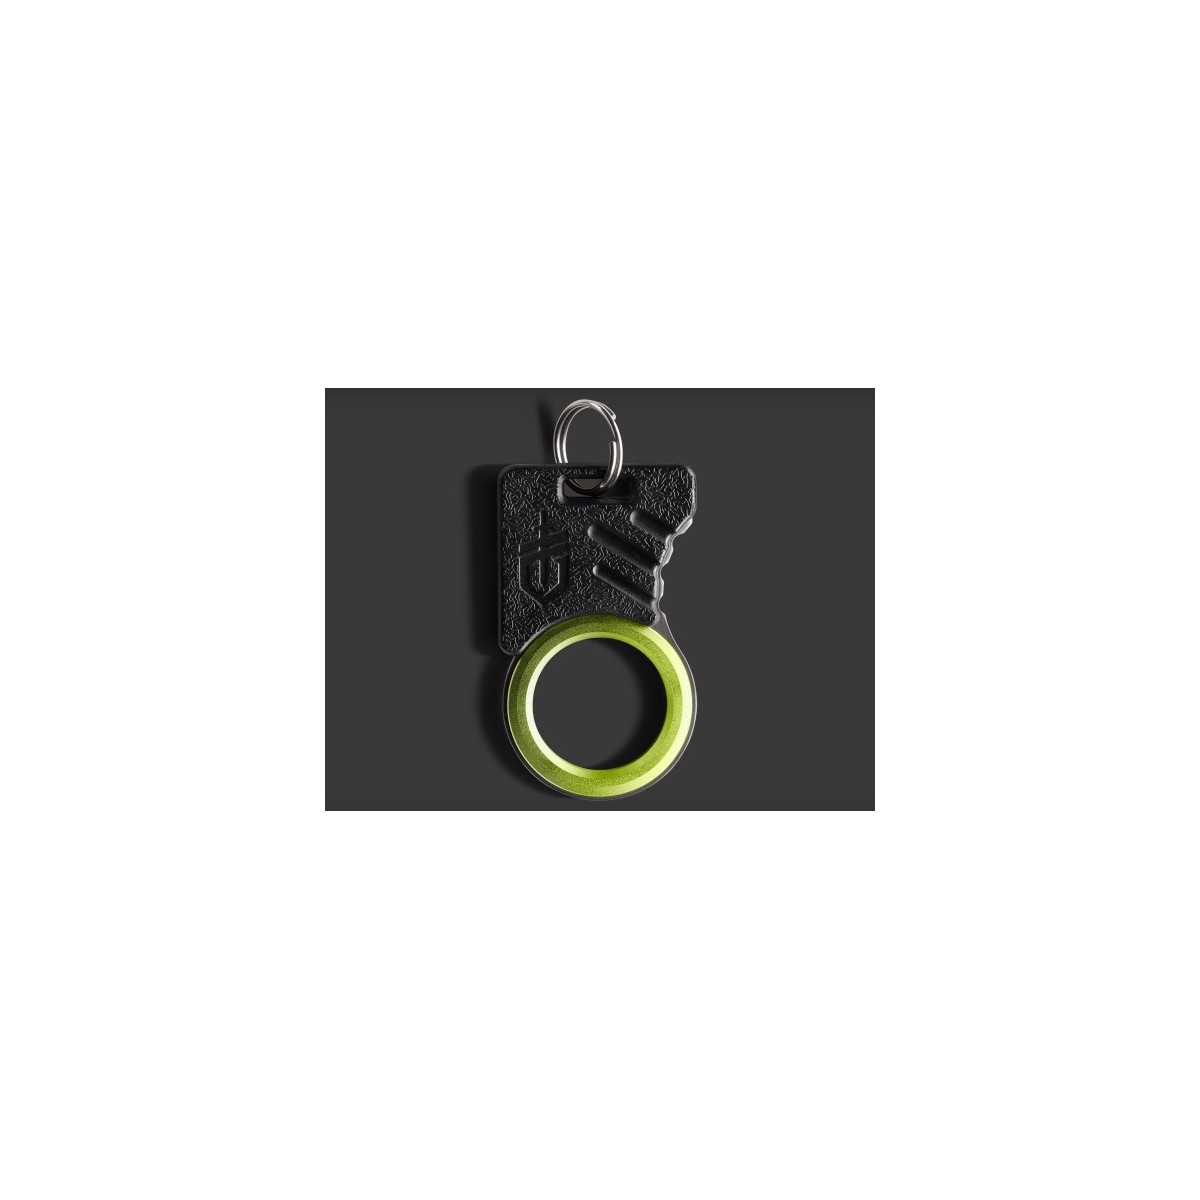 พวงกุญแจ อุปกรณ์ฉุกเฉิน Gerber GDC Hook Knife Emergency Keychain Tool (31-001695)